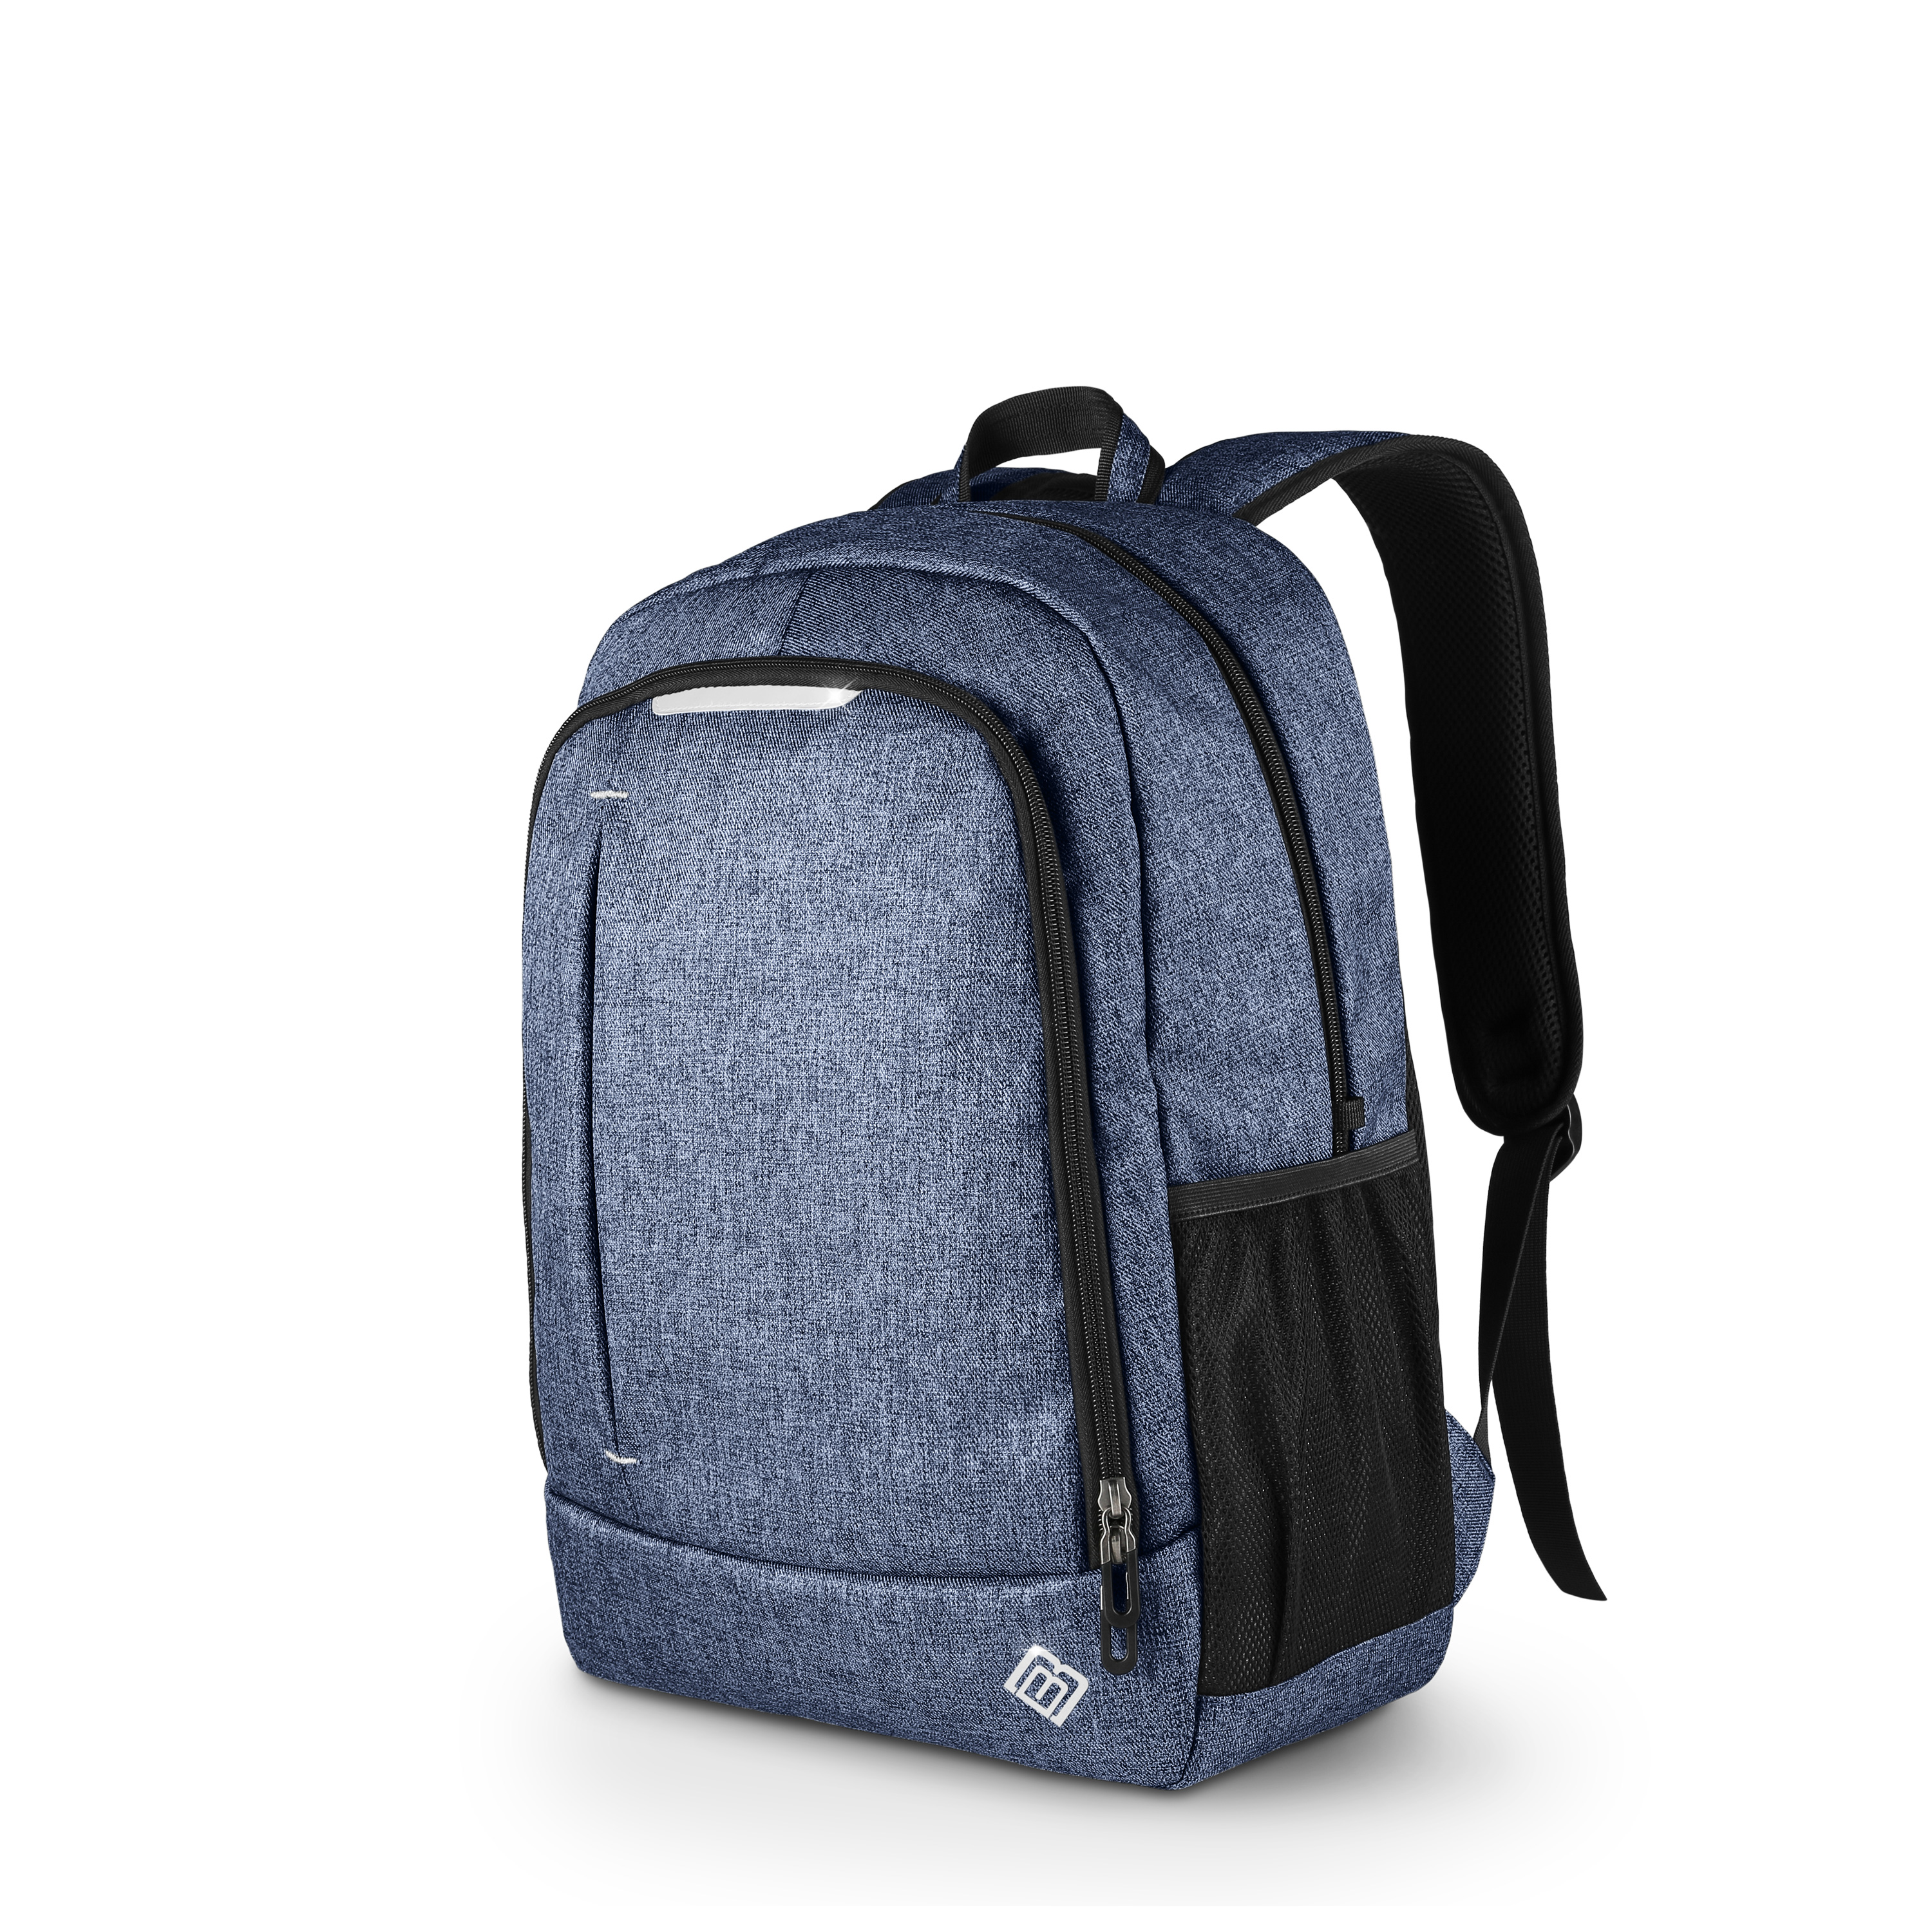 BOOSTBOXX BoostBag One blau blau Textil/Stoff, Universal für Rucksack Notebook-Rucksack